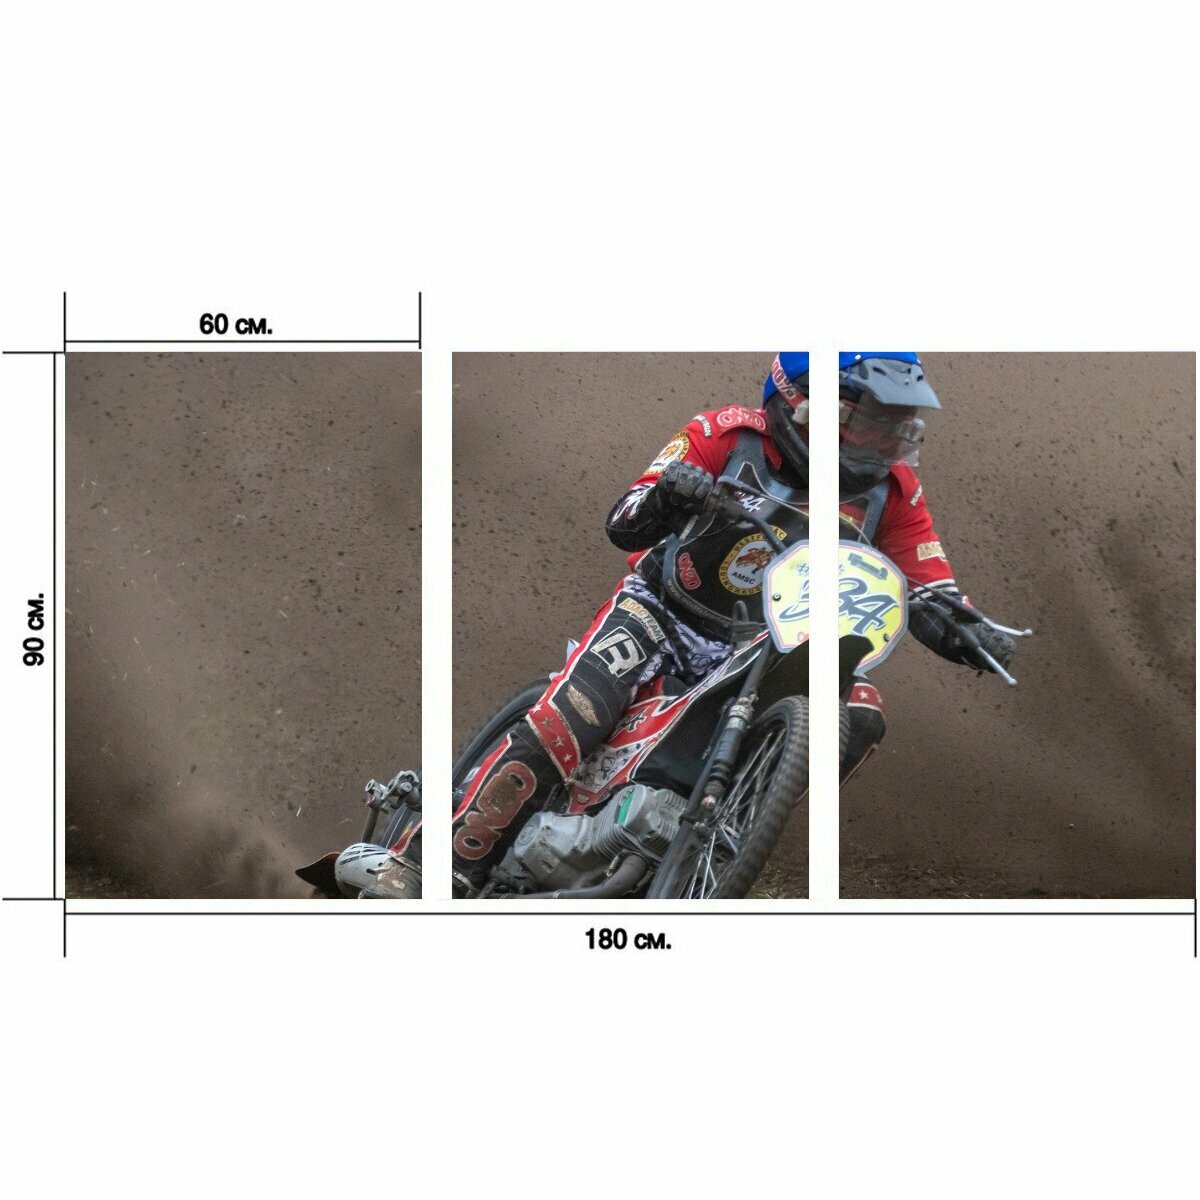 Модульный постер "Моторспорт а о, мотоцикл, виды спорта" 180 x 90 см. для интерьера